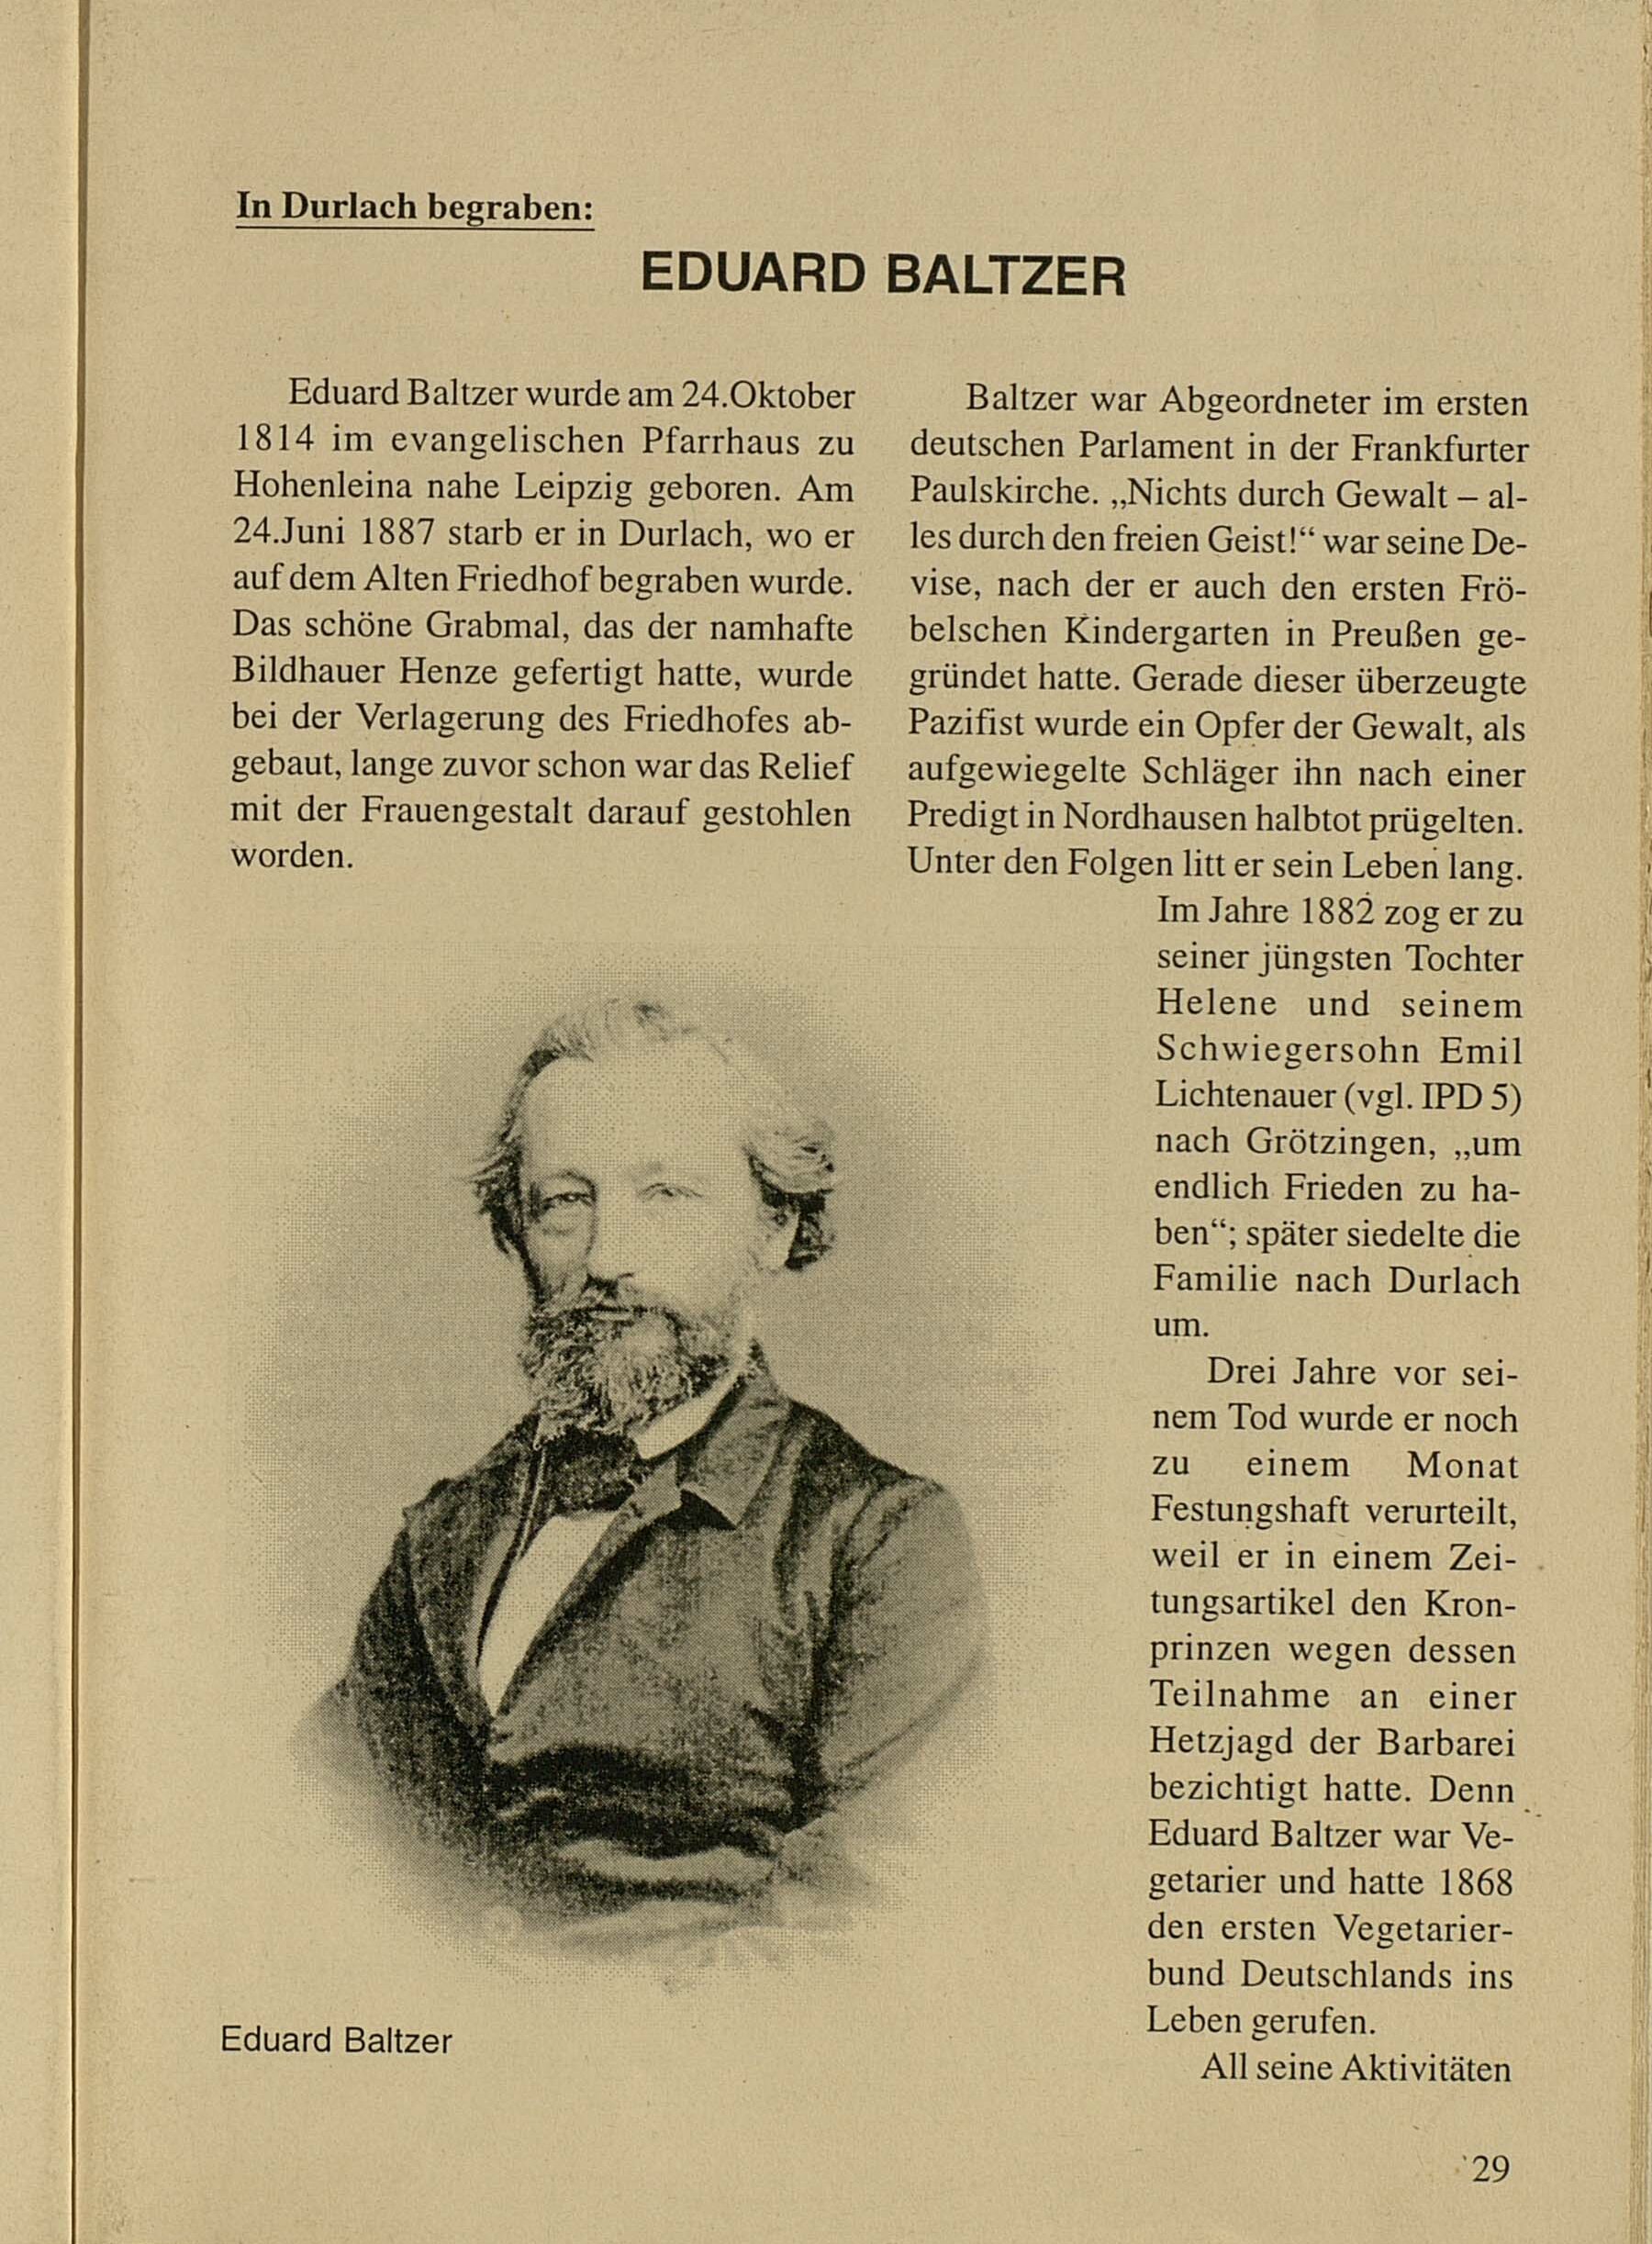 Biographischer Text zu Eduard Baltzer, gedruckte Seite mit einem Porträt von Eduard Baltzer.